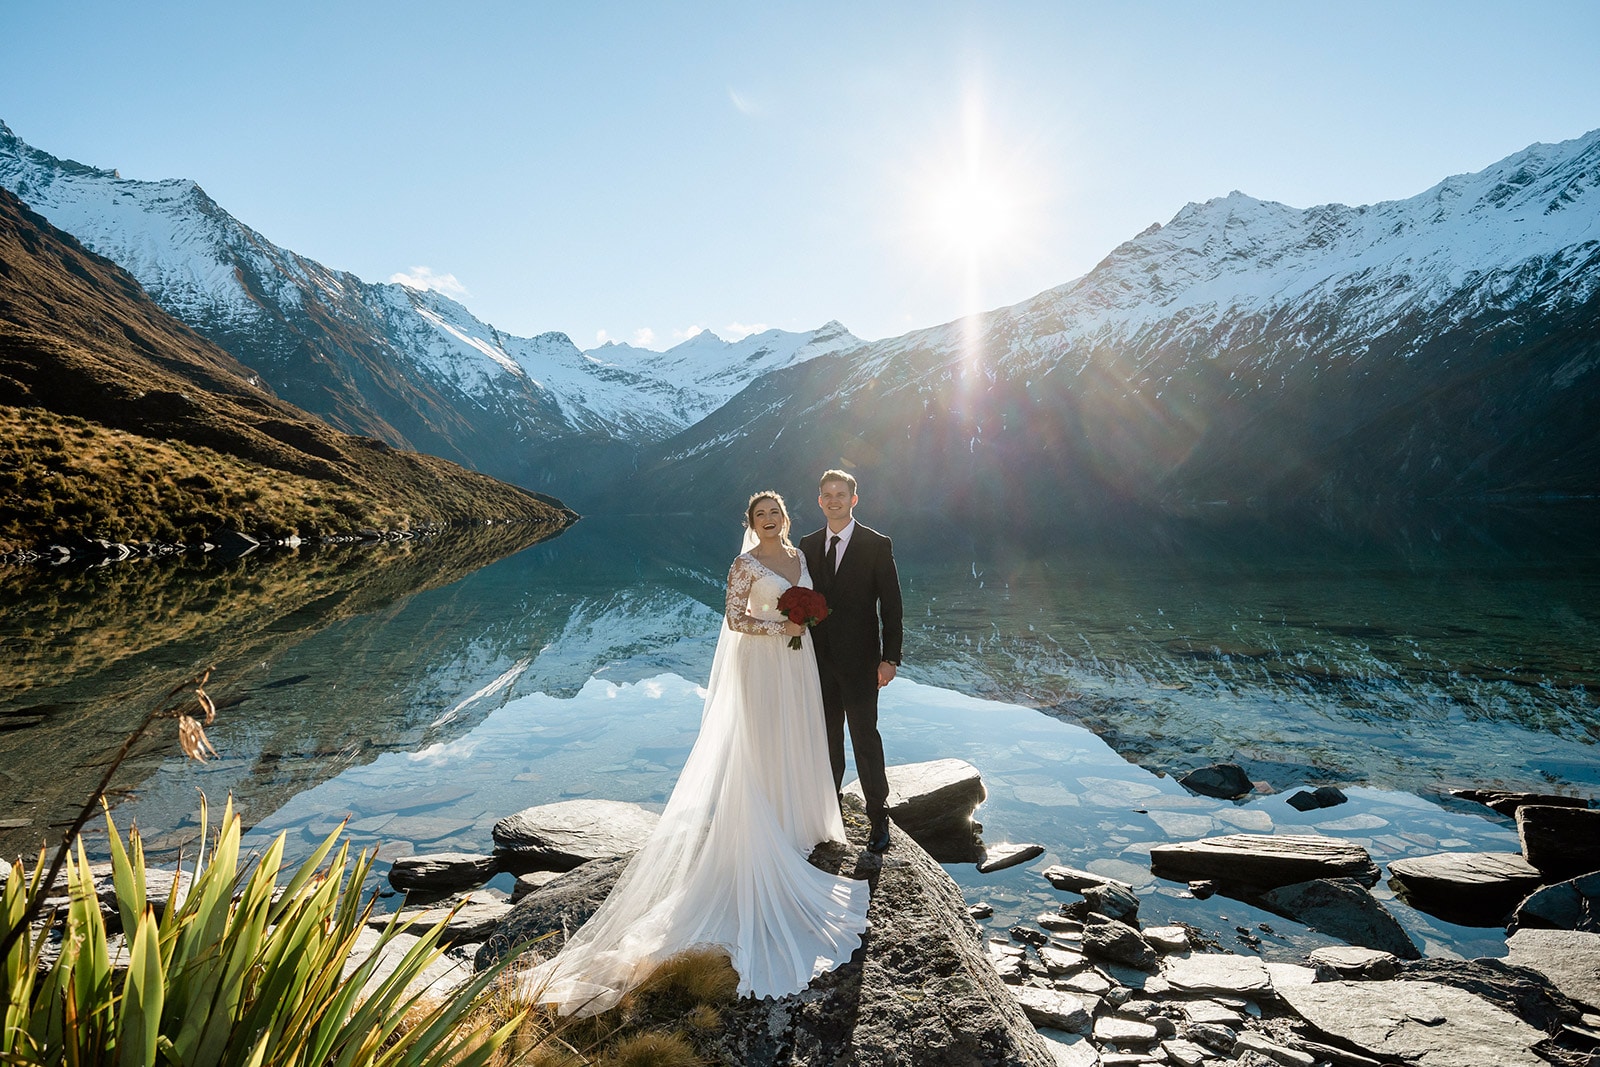 Winter wedding at Lochnagar Queenstown New Zealand